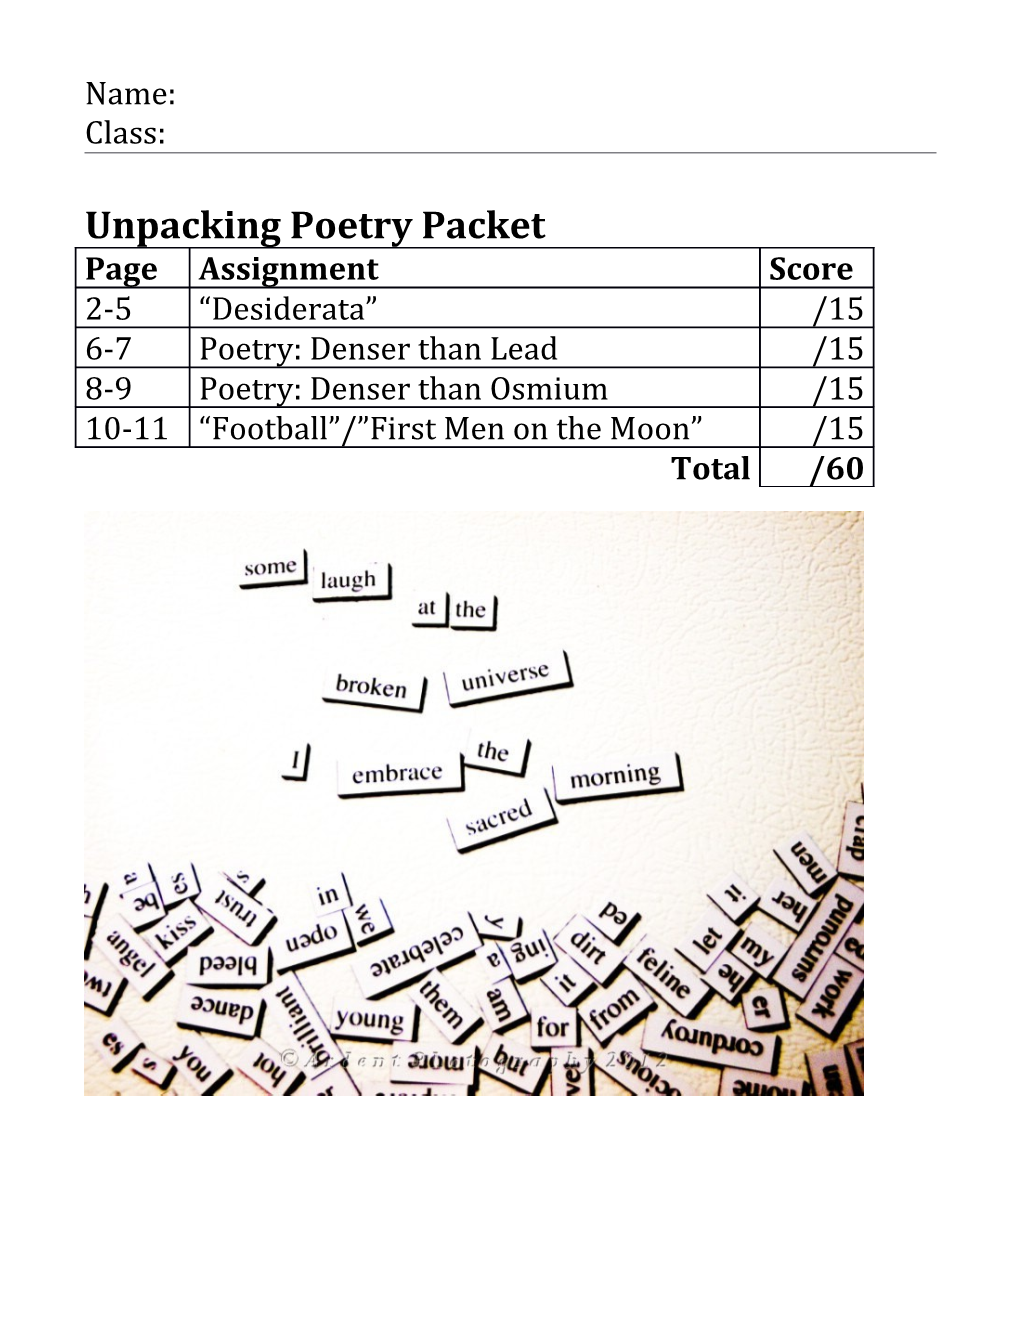 Unpacking Poetry Packet